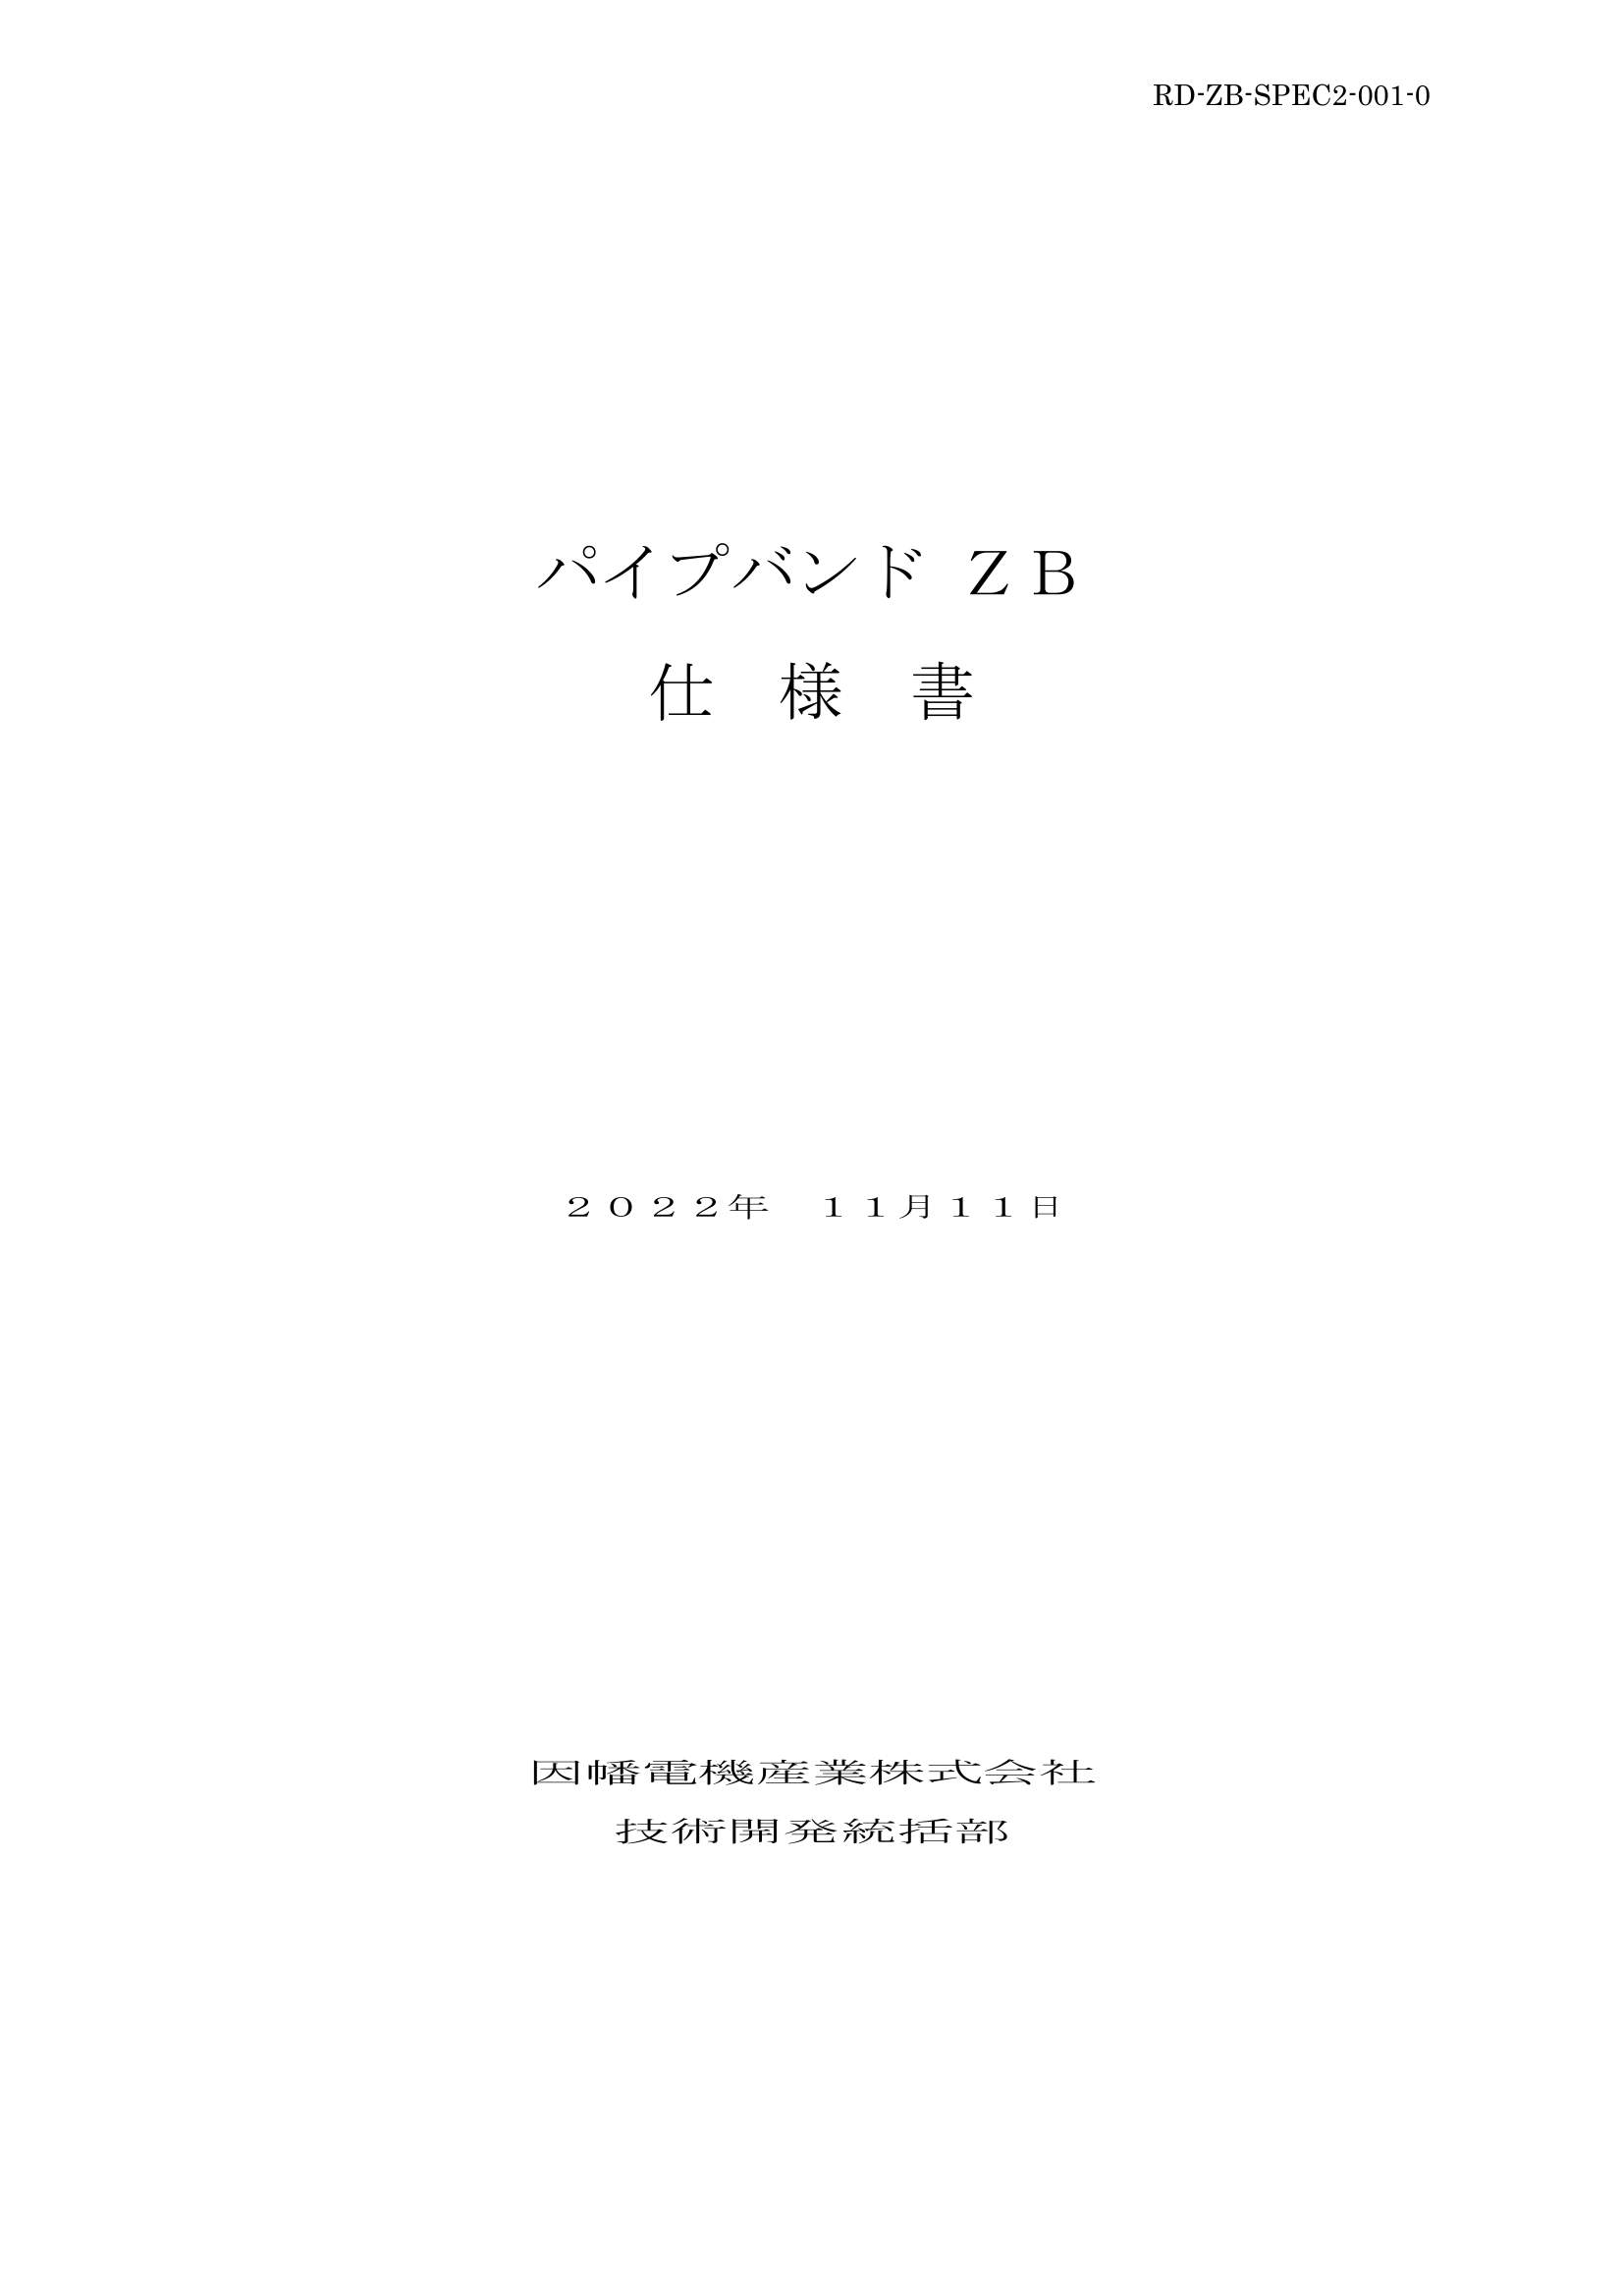 ZB-PB_仕様書_20221111.pdf